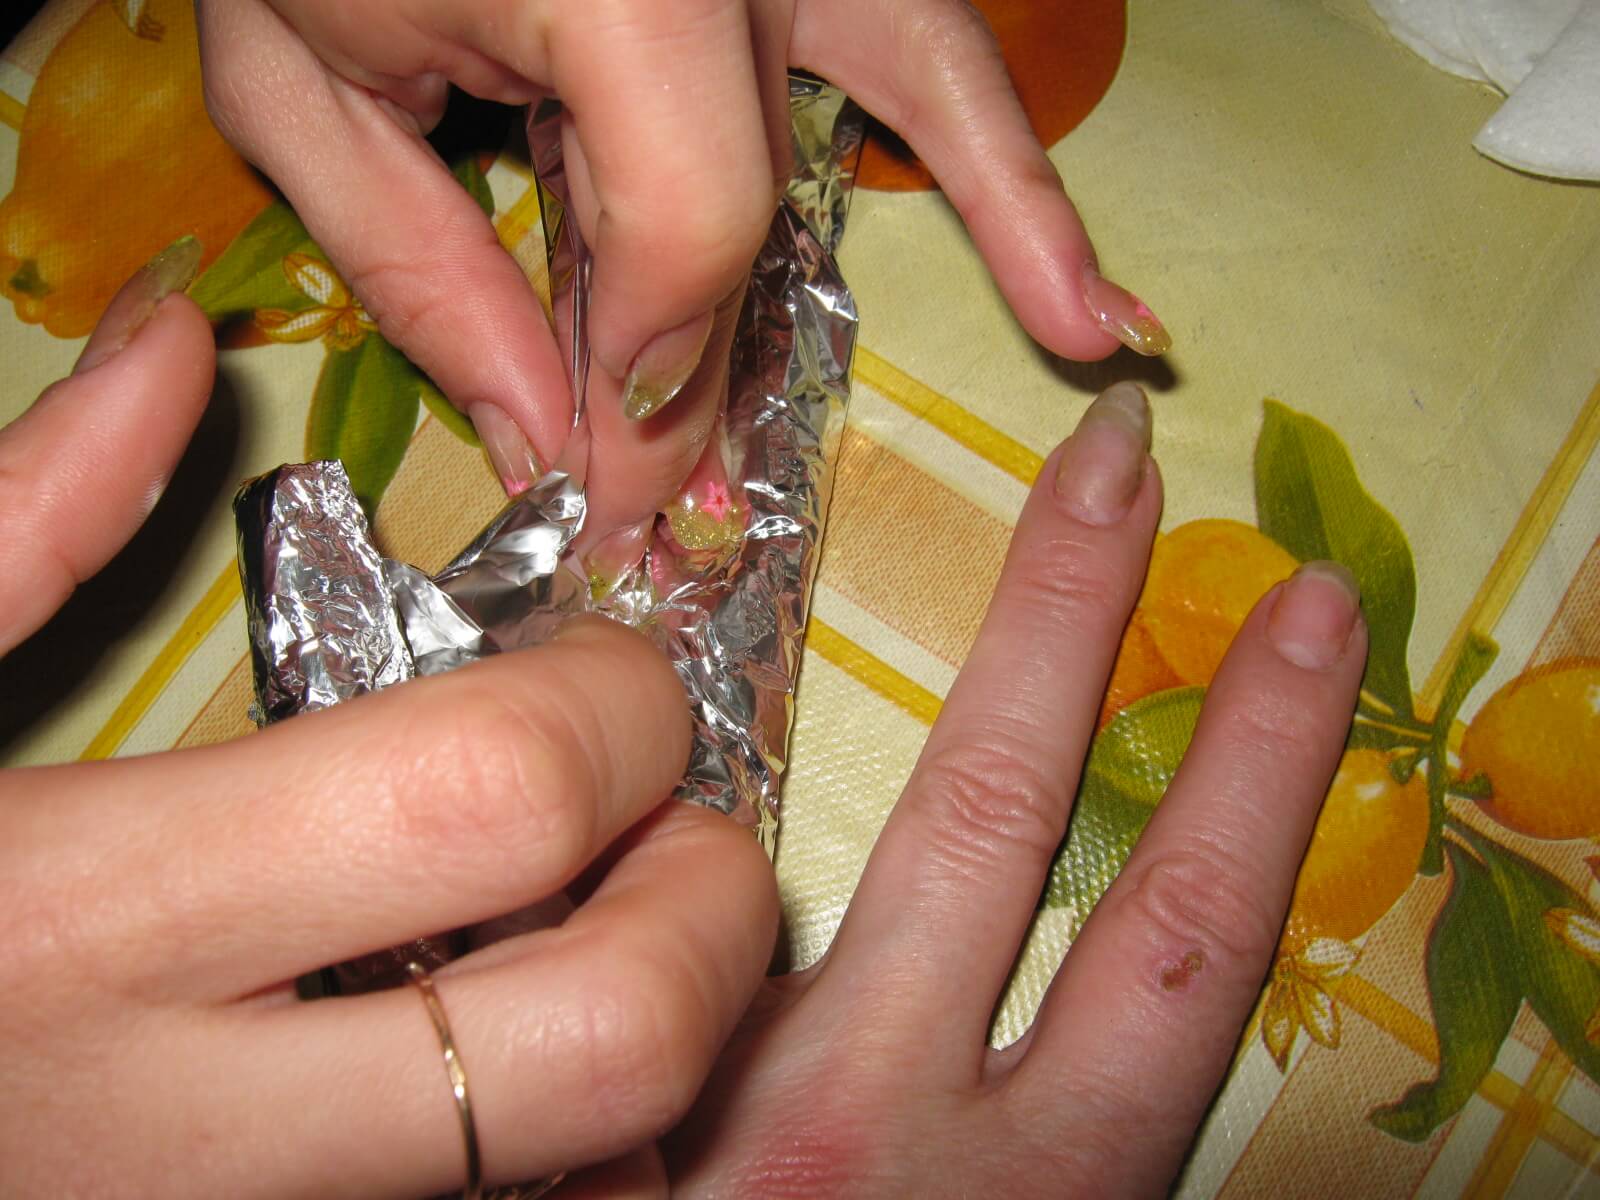 Как снимать нарощенные ногти в домашних условиях? нарощенные ногти - как снять :: syl.ru